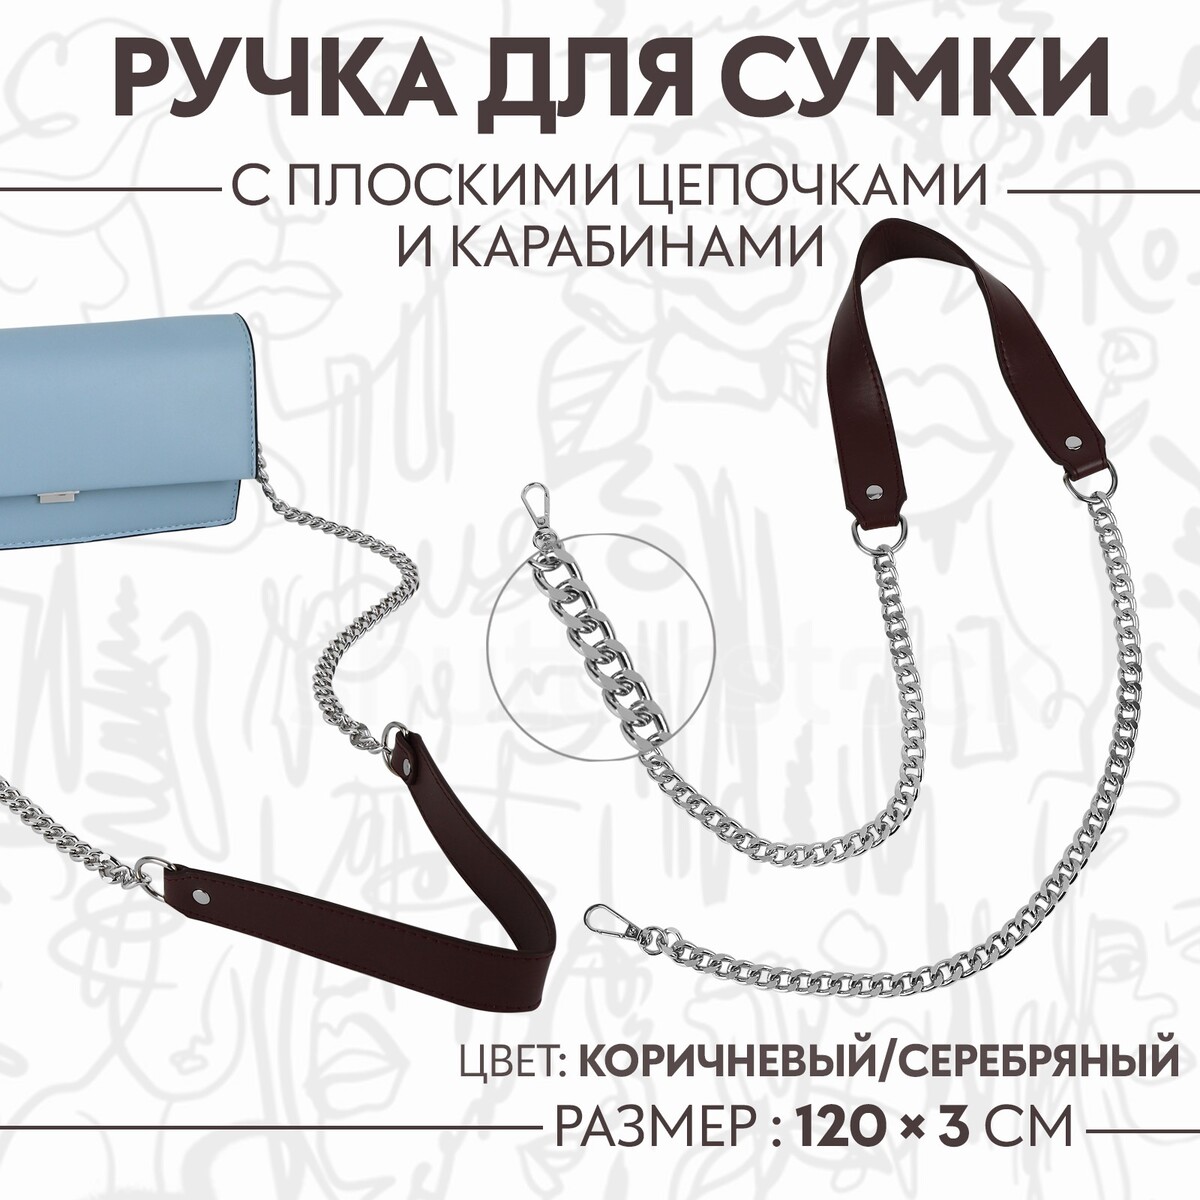 Ручка для сумки, с плоскими цепочками и карабинами, 120 × 3 см, цвет коричневый/серебряный ручка для сумки с карабинами 60 × 2 см светло коричневый